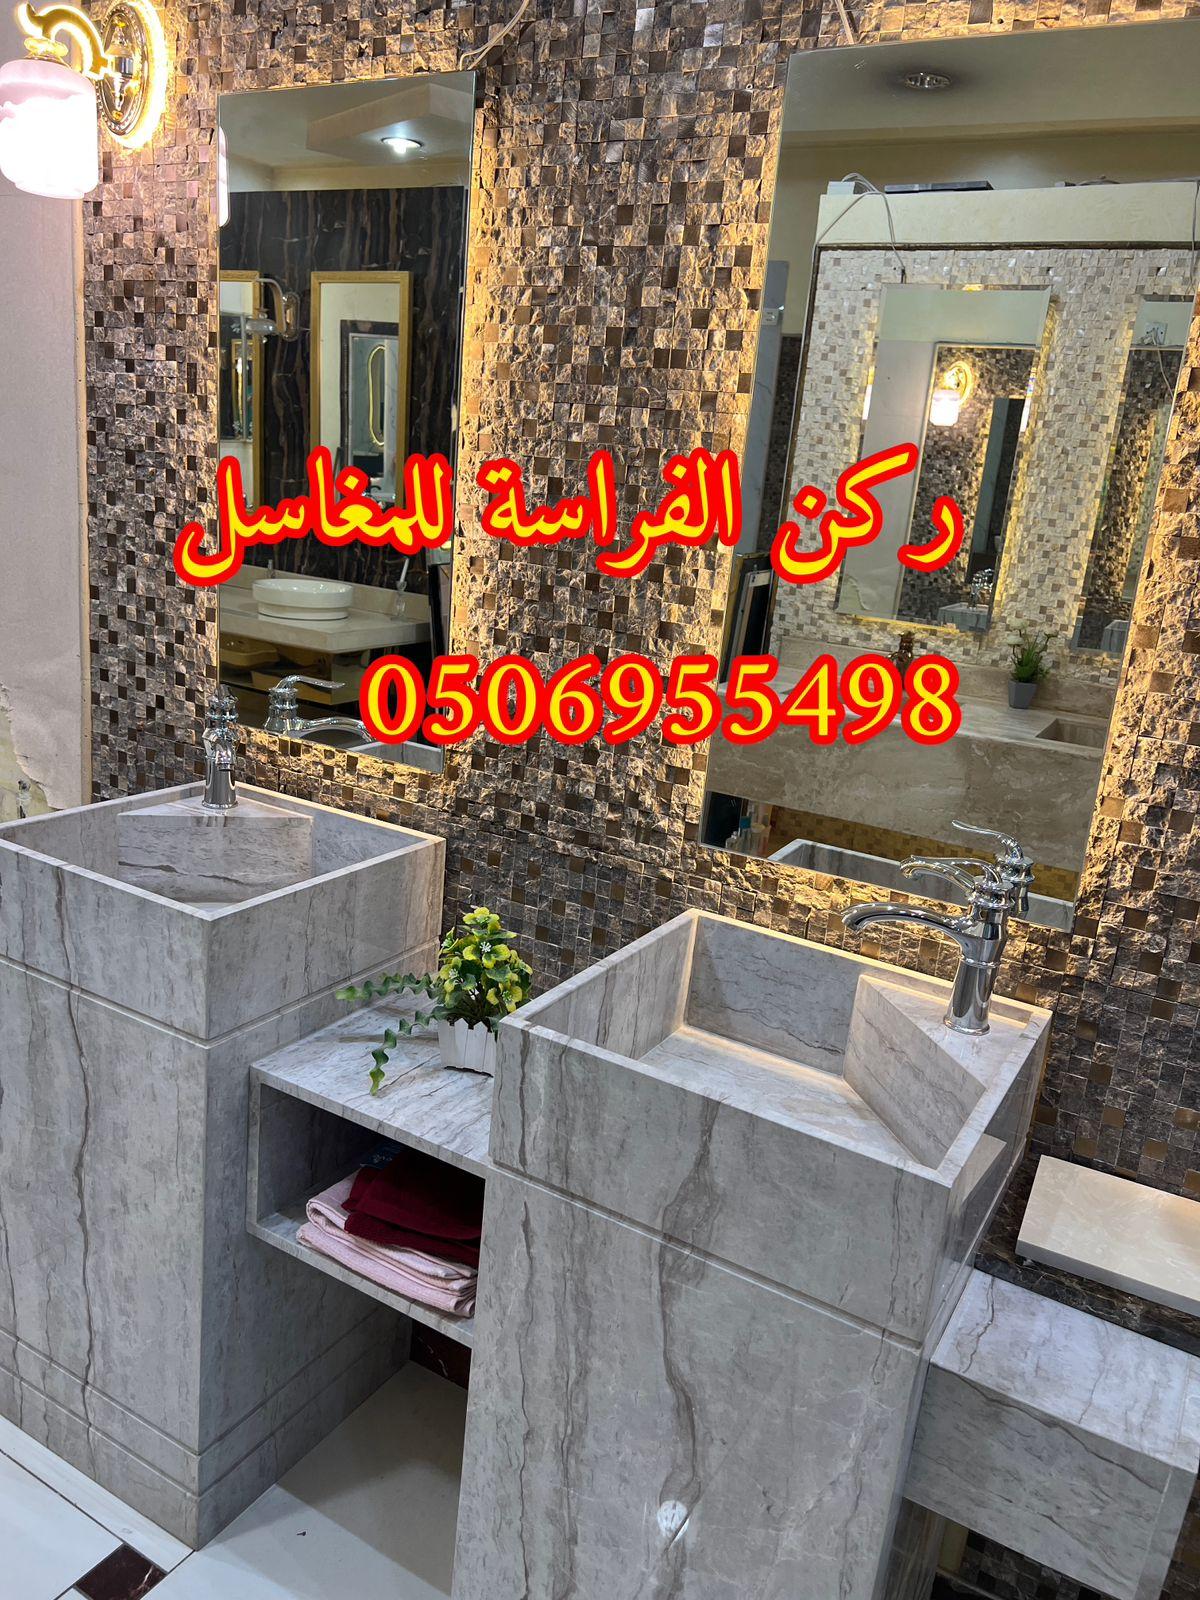 الرياض - تصاميم مغاسل رخام للمجالس في الرياض,0506955498 851250385